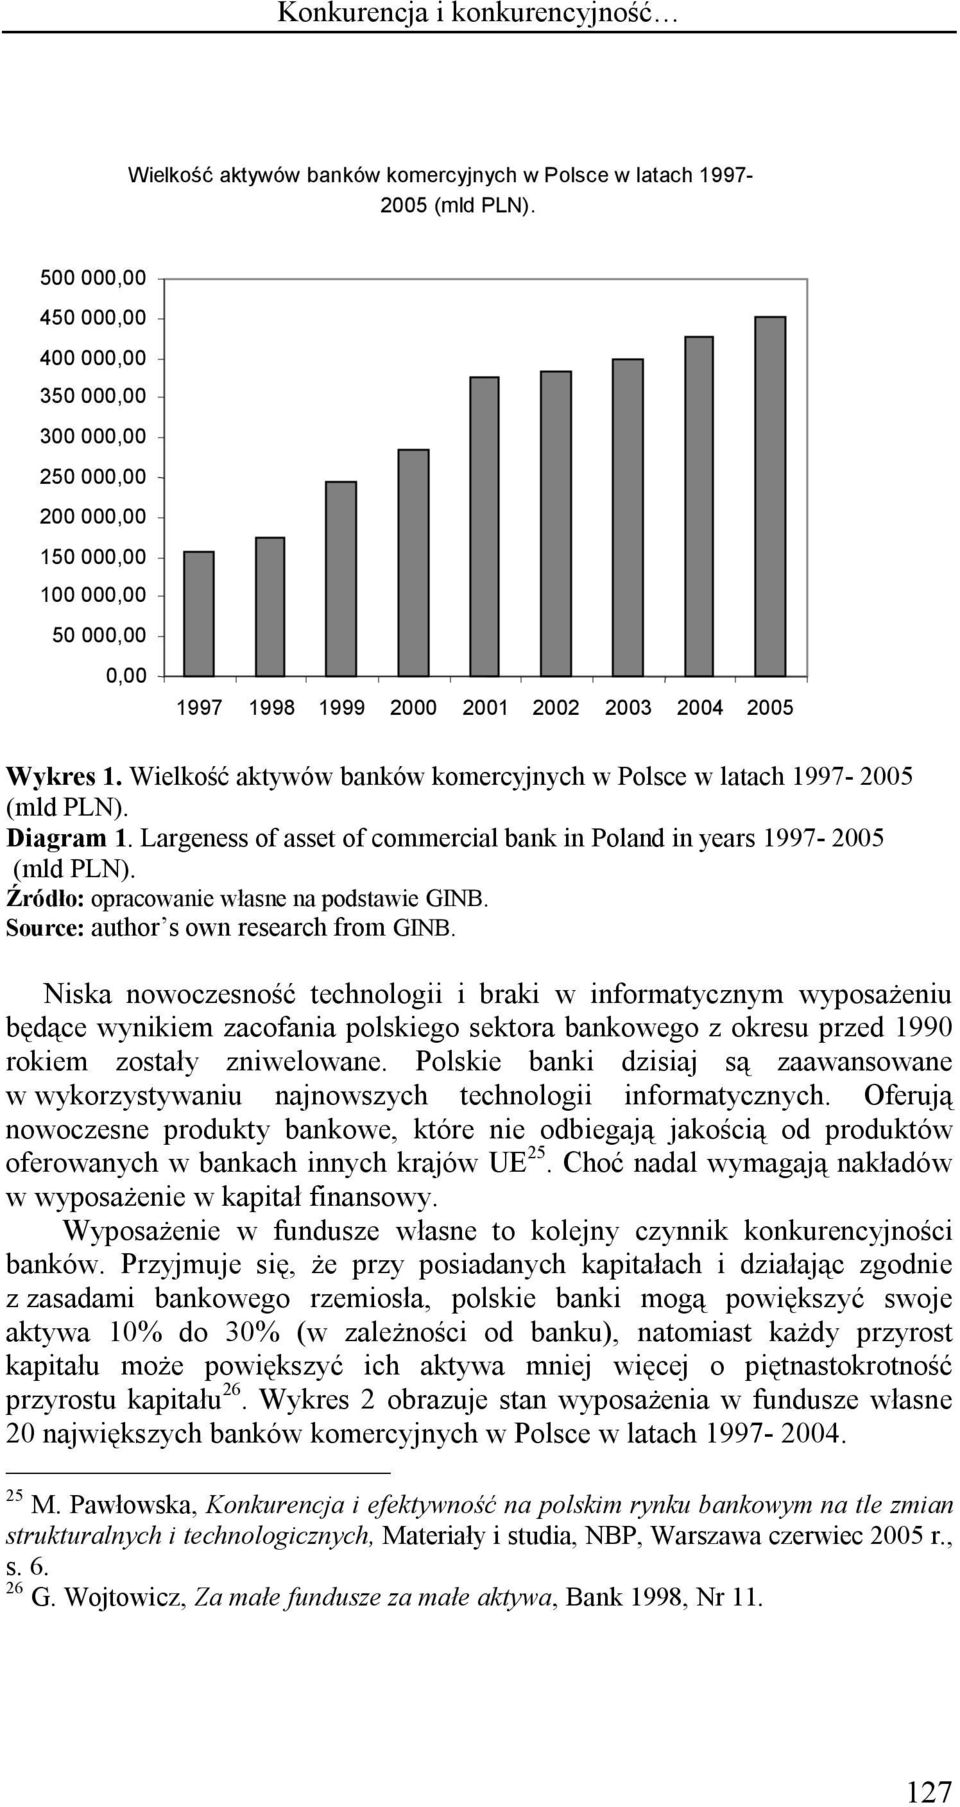 Wielkość aktywów banków komercyjnych w Polsce w latach 1997-2005 (mld PLN). Diagram 1. Largeness of asset of commercial bank in Poland in years 1997-2005 (mld PLN).